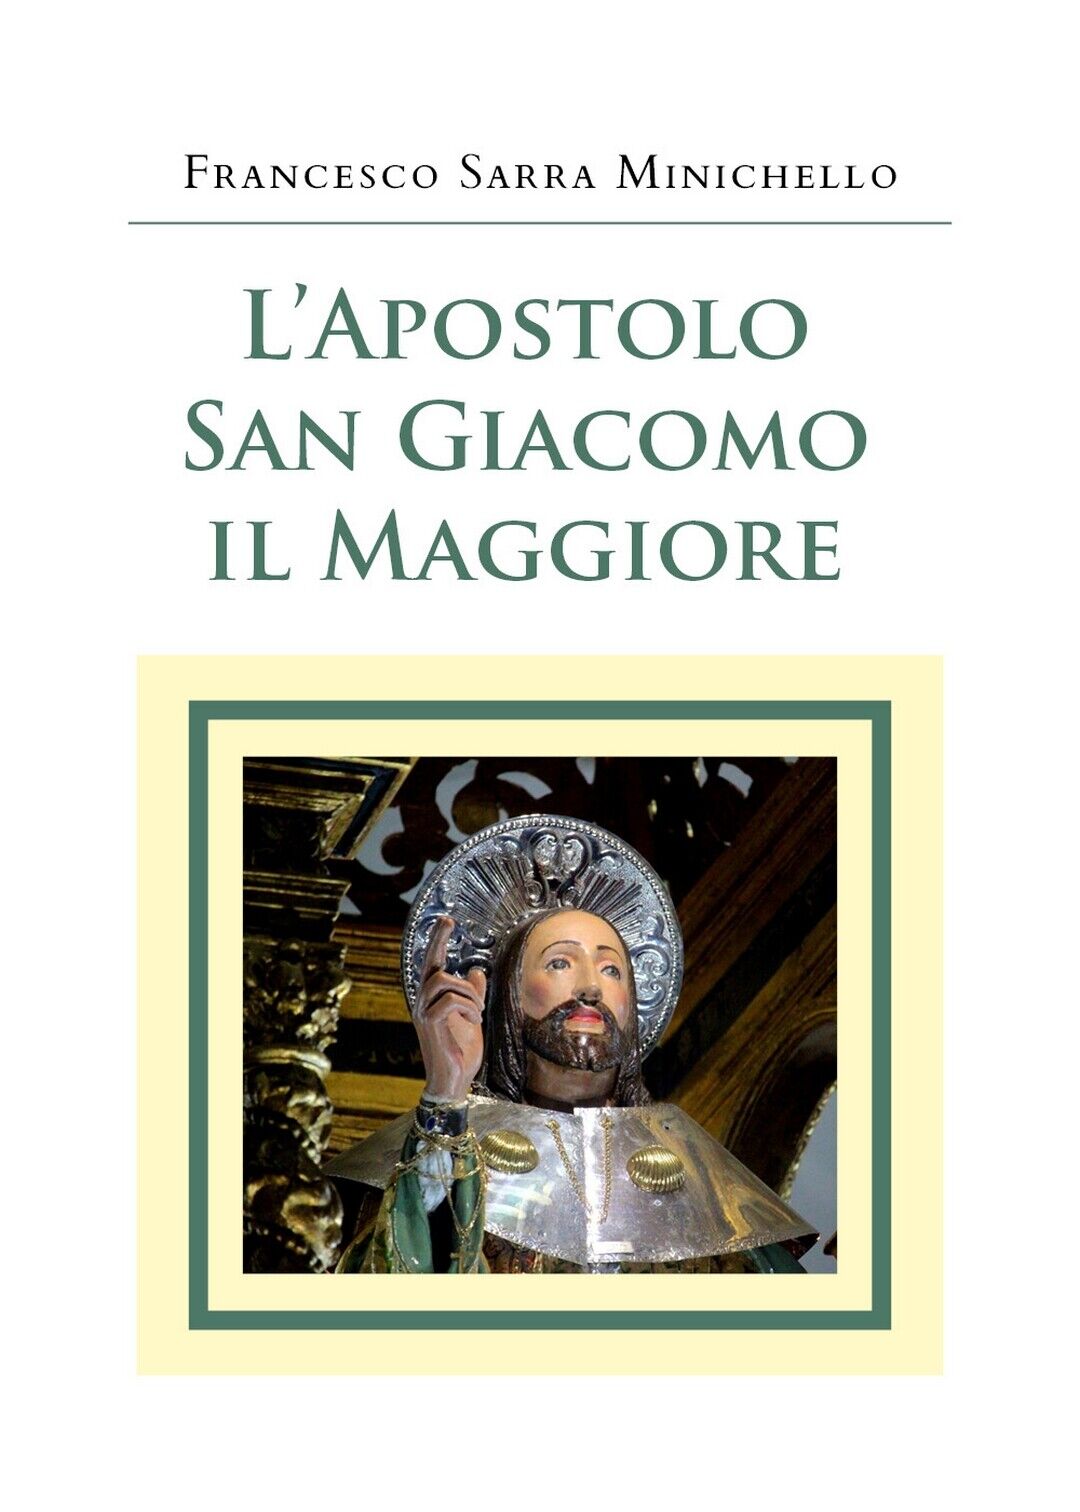 L'Apostolo San Giacomo il Maggiore, Francesco Sarra Minichello,  2020,  Youcanp.